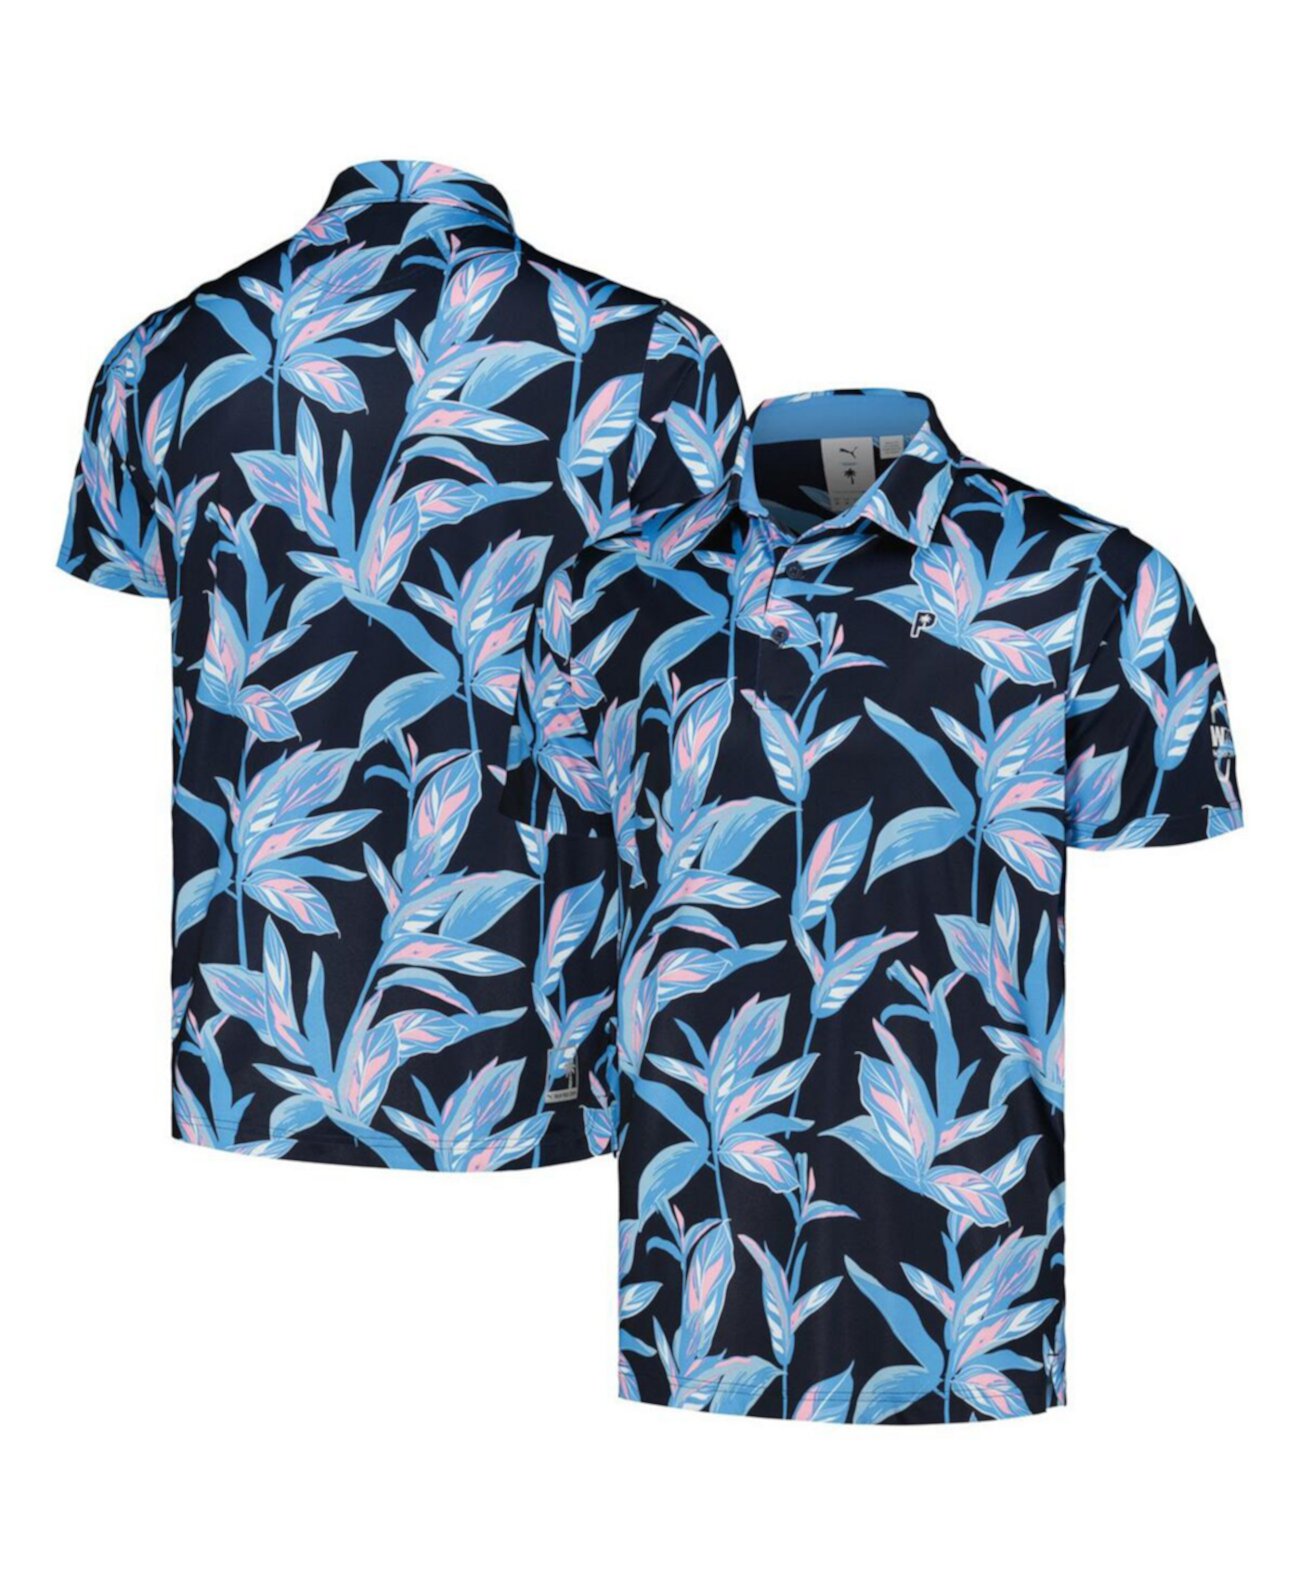 Мужская рубашка-поло MATTR с открытым цветочным принтом Phoenix Open WM x PTC WM PUMA